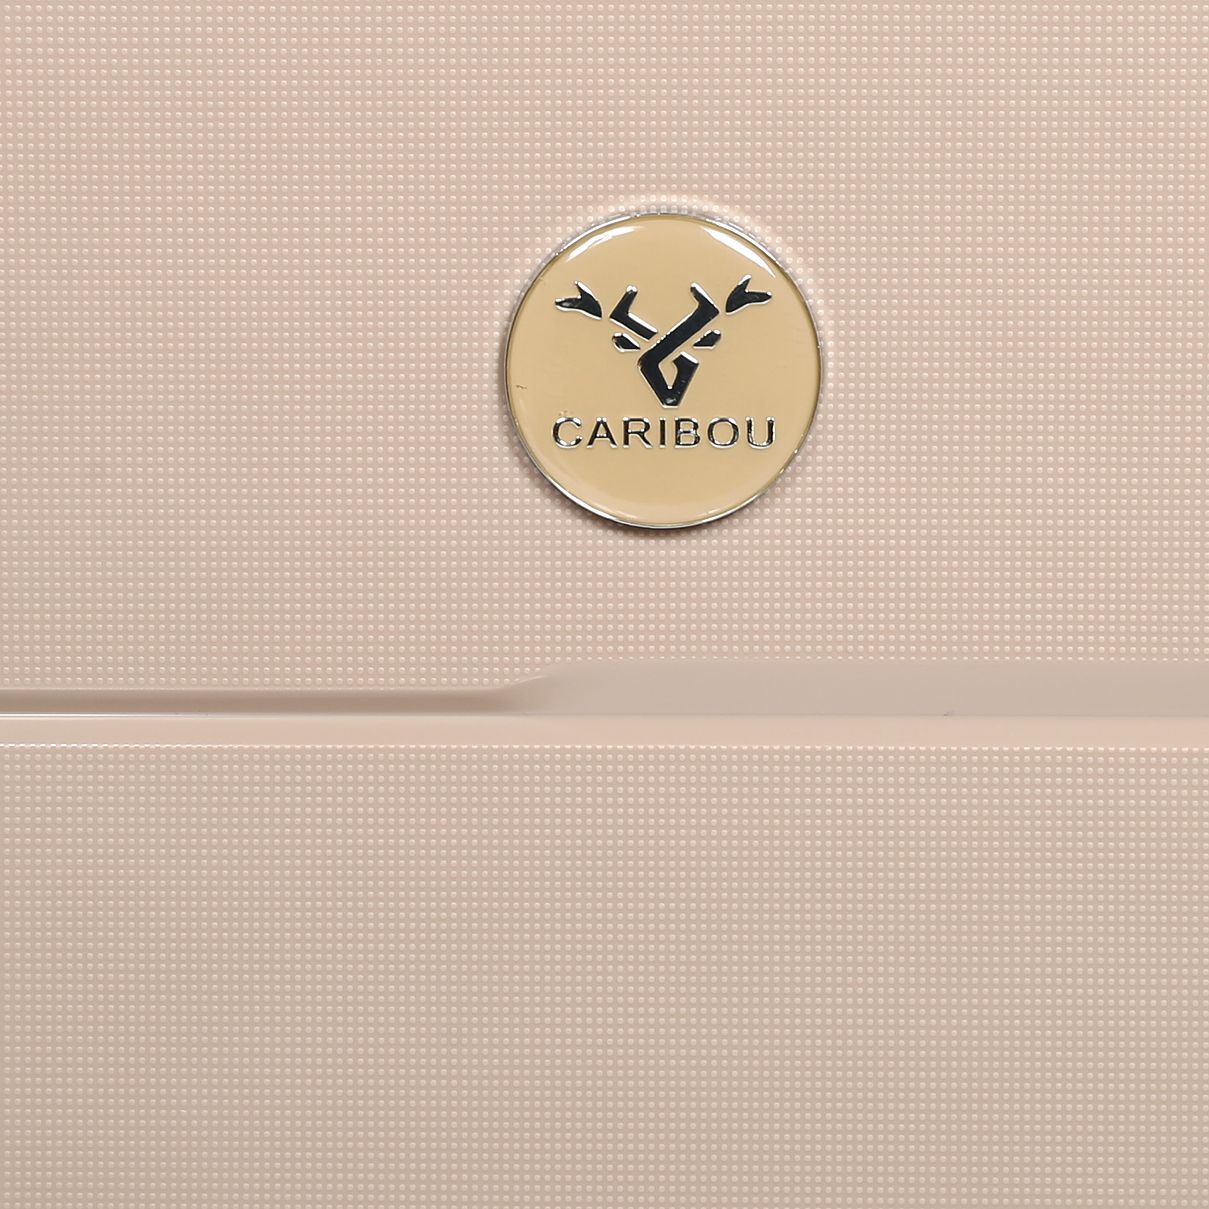 چمدان کاریبو مدل SBC34210 سایز متوسط -  - 14